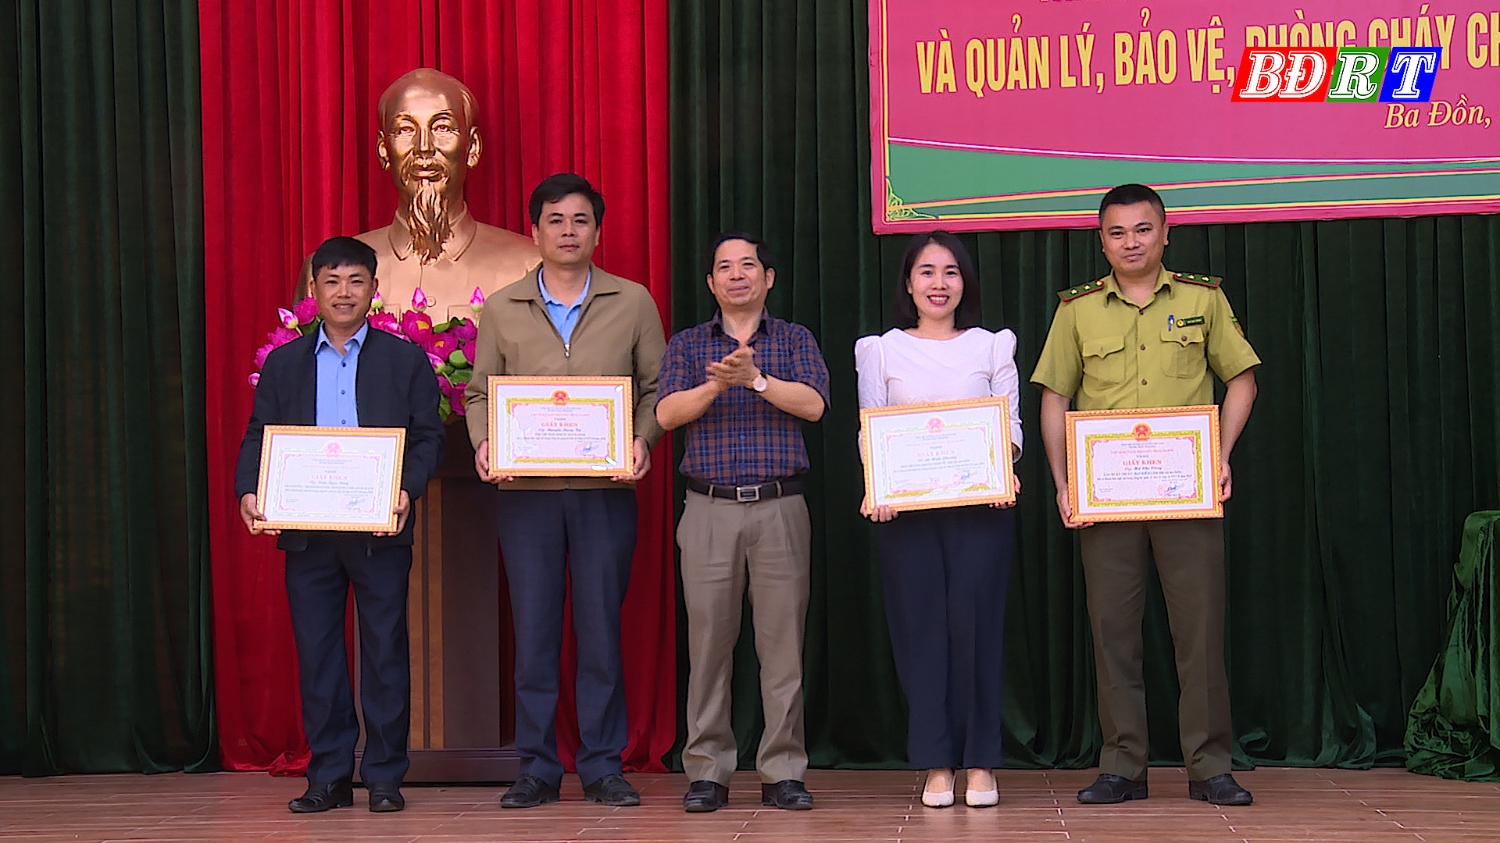 04 cá nhân được nhận giấy khen của UBND thị xã Ba Đồn vì đã có thành tích xuất sắc trong công tác quản lý, bảo vệ rừng và PCCCR năm 2022